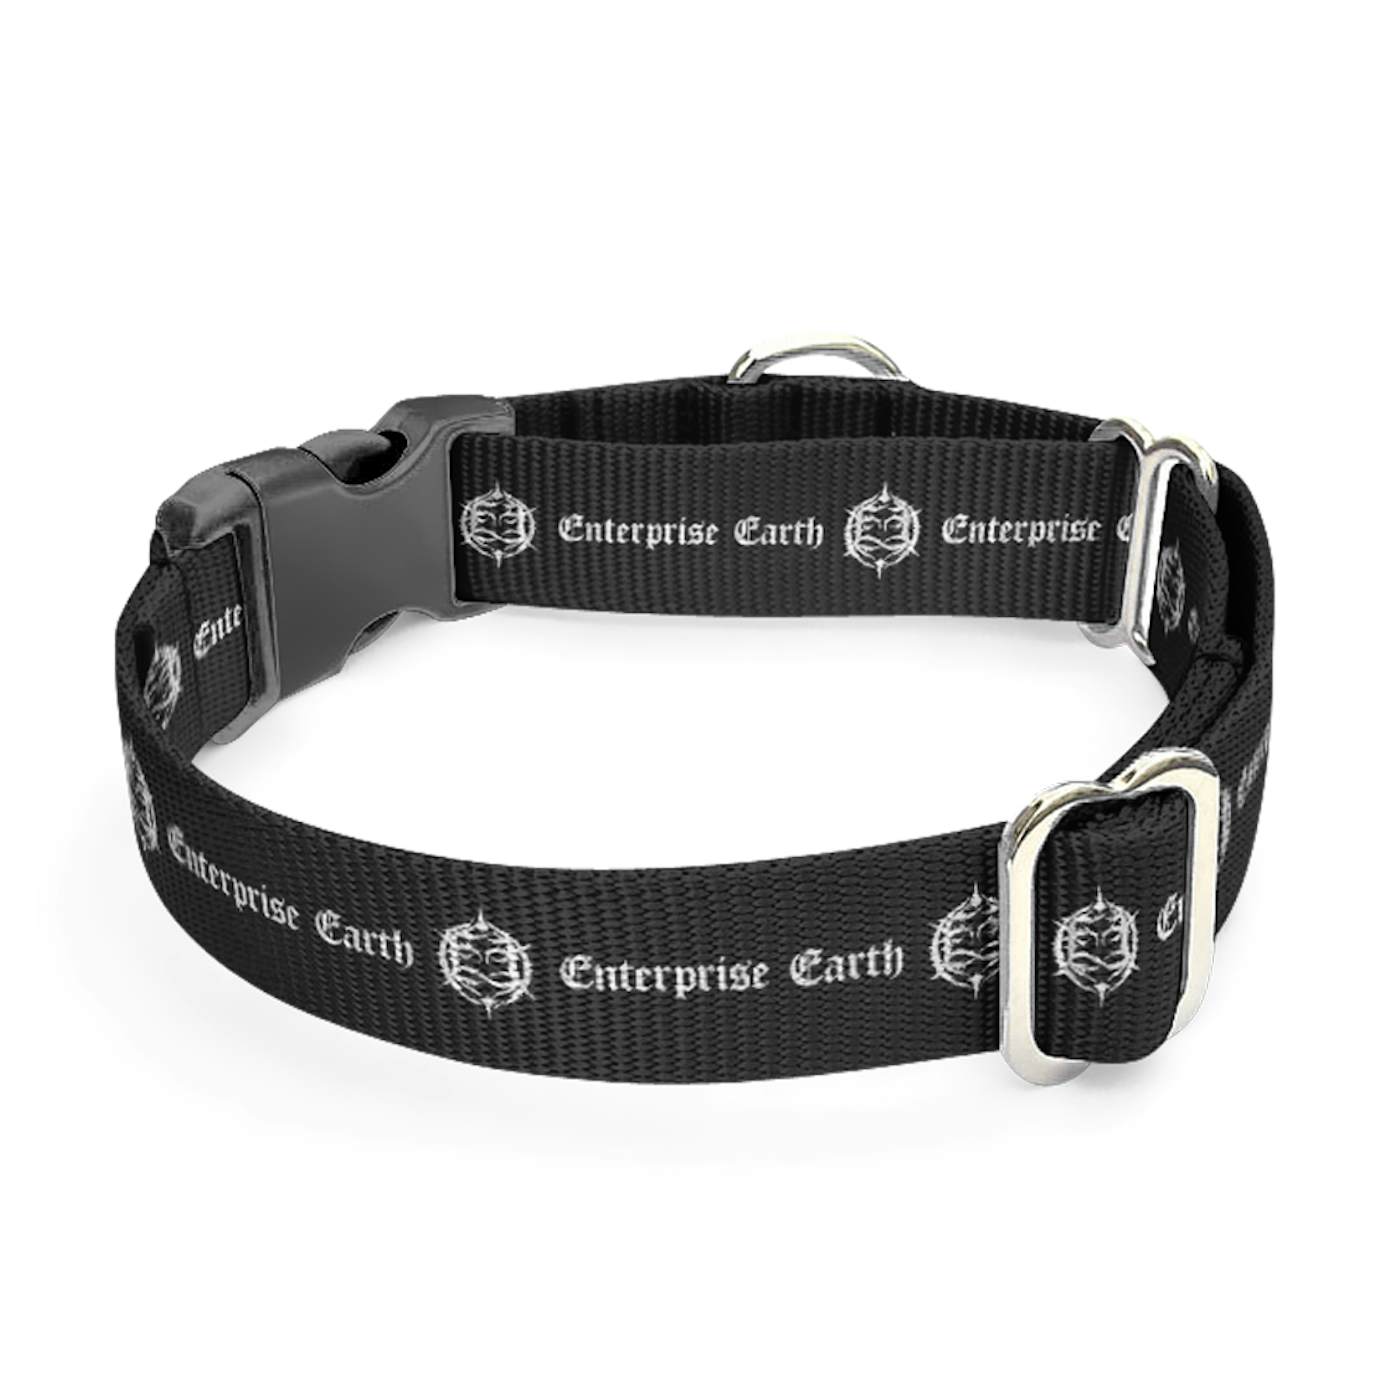 Enterprise Earth Dog Collar